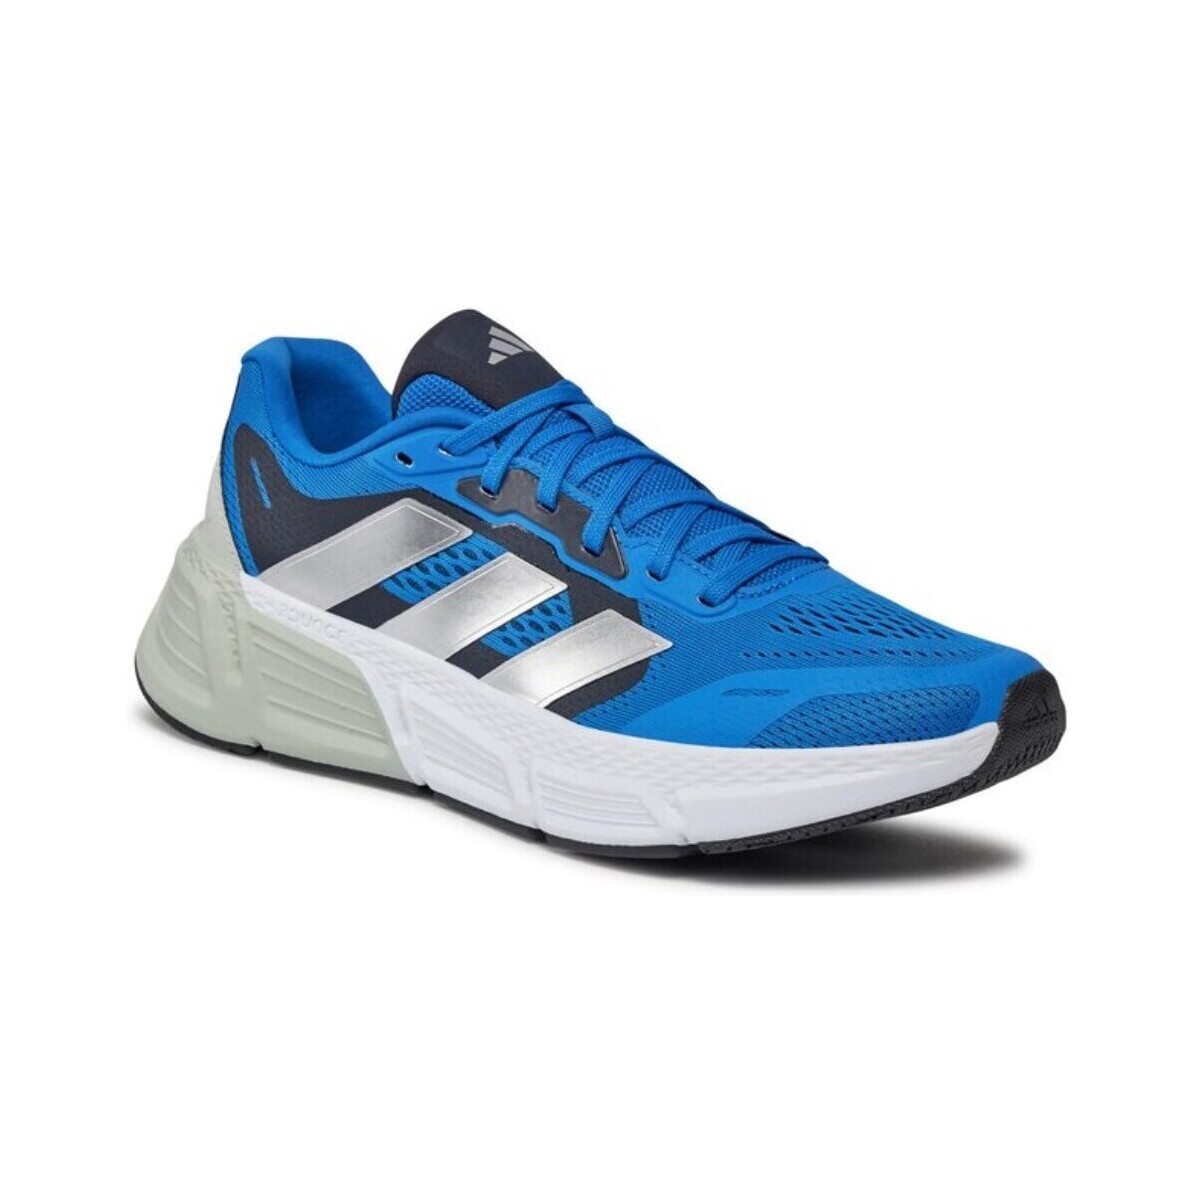 Adidas Questar Blue